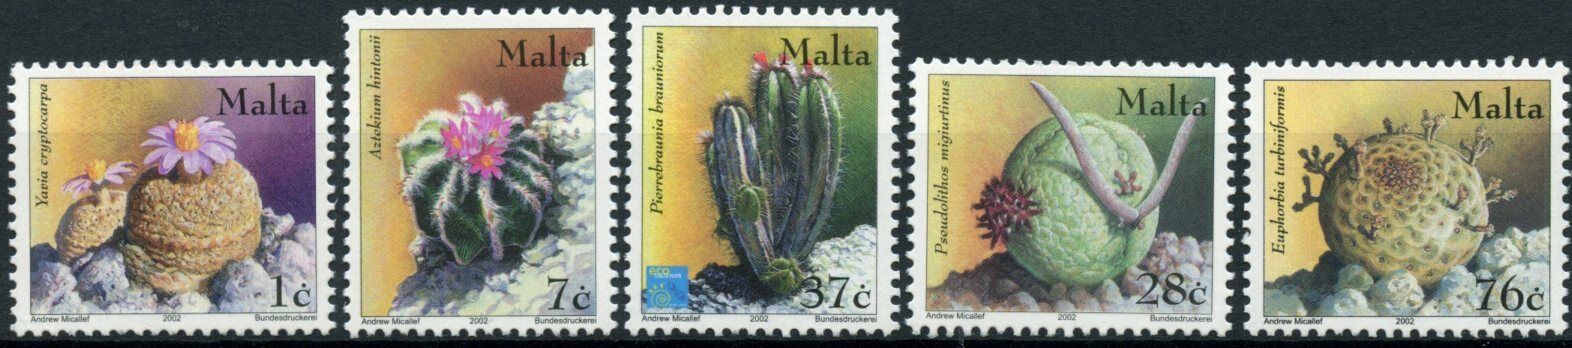 Malta 2002 MNH Plants Stamps Cacti Cactus & Succulents Nature Flora 5v Set